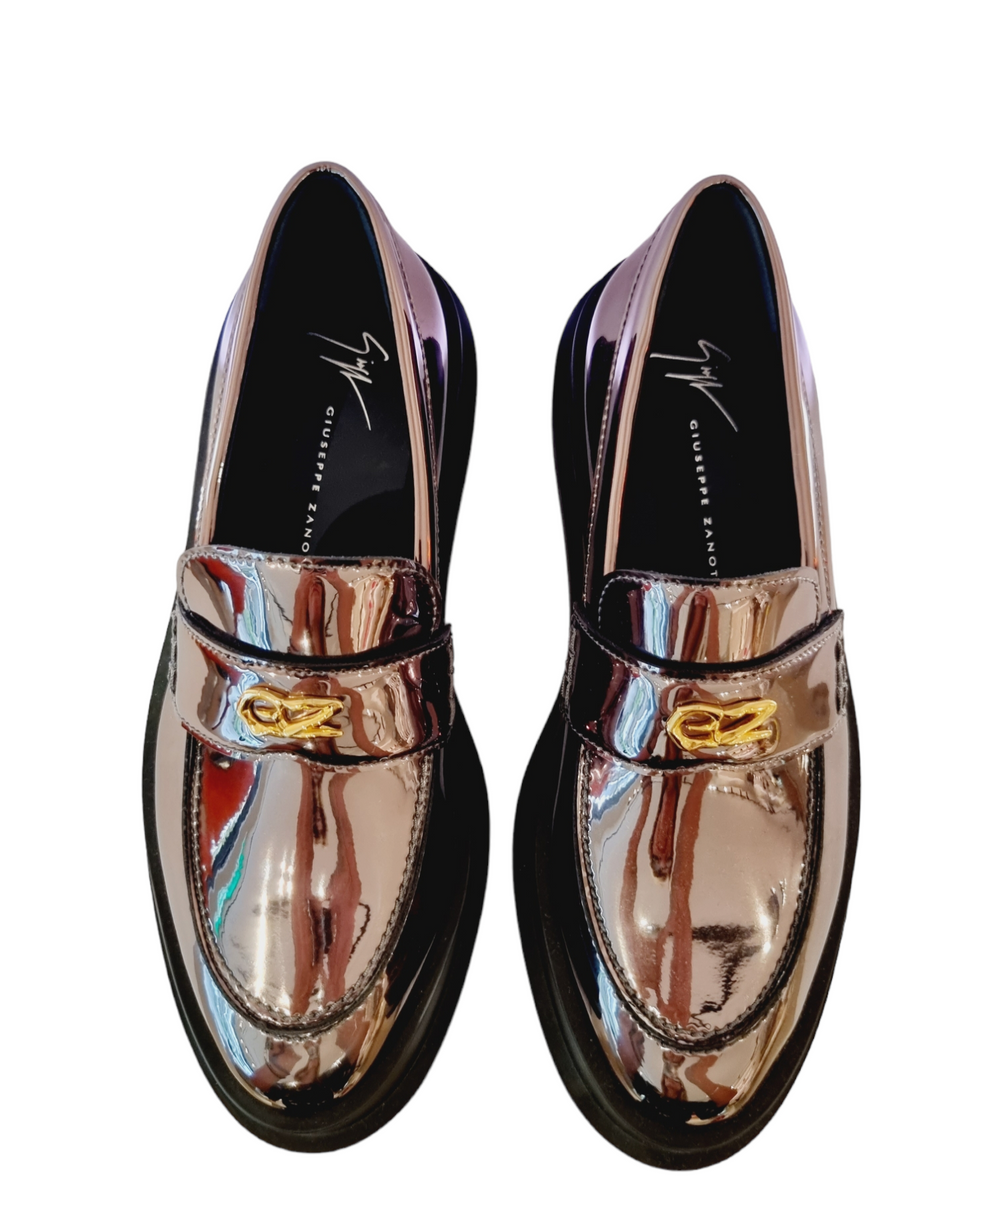 Malic Patent Pewter Loafers - GIUSEPPE-ZANOTTI - Liberty Shoes Australia